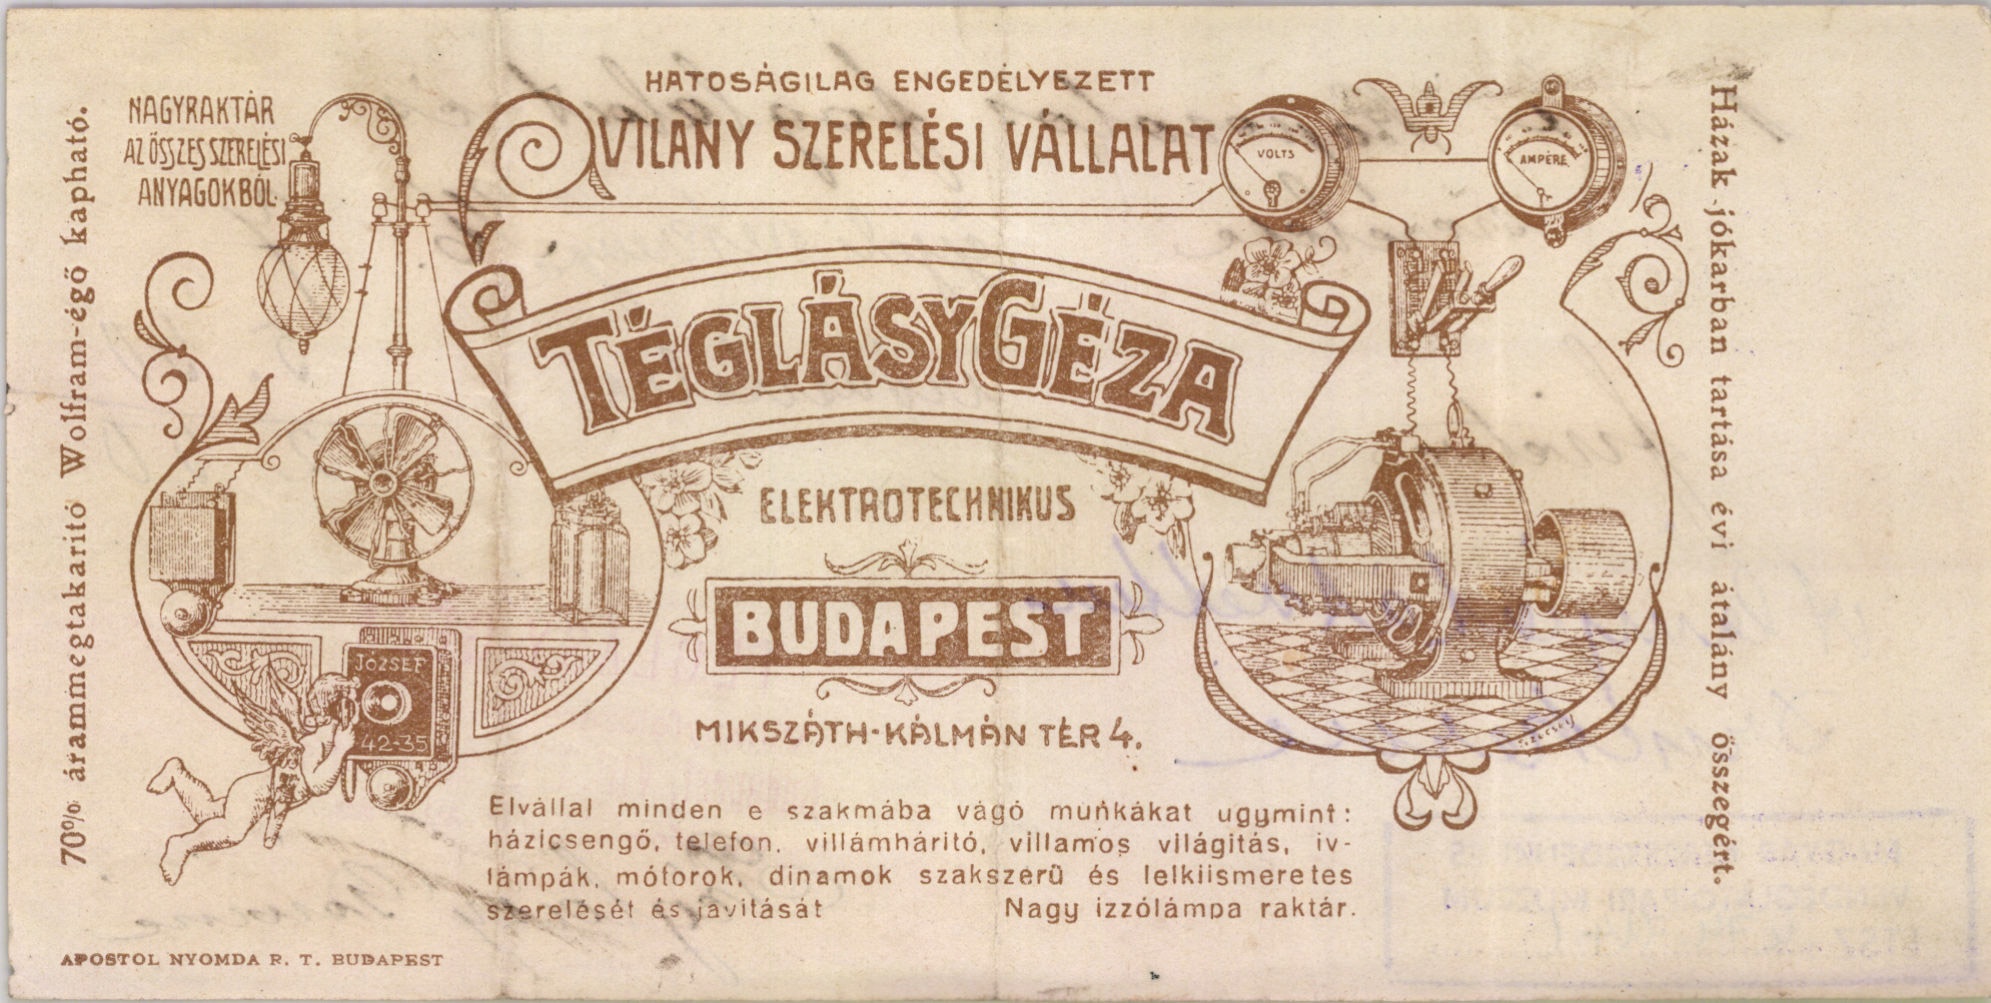 Téglásy Géza elektrotechnikus villanyszerelési vállalata (Magyar Kereskedelmi és Vendéglátóipari Múzeum CC BY-NC-SA)